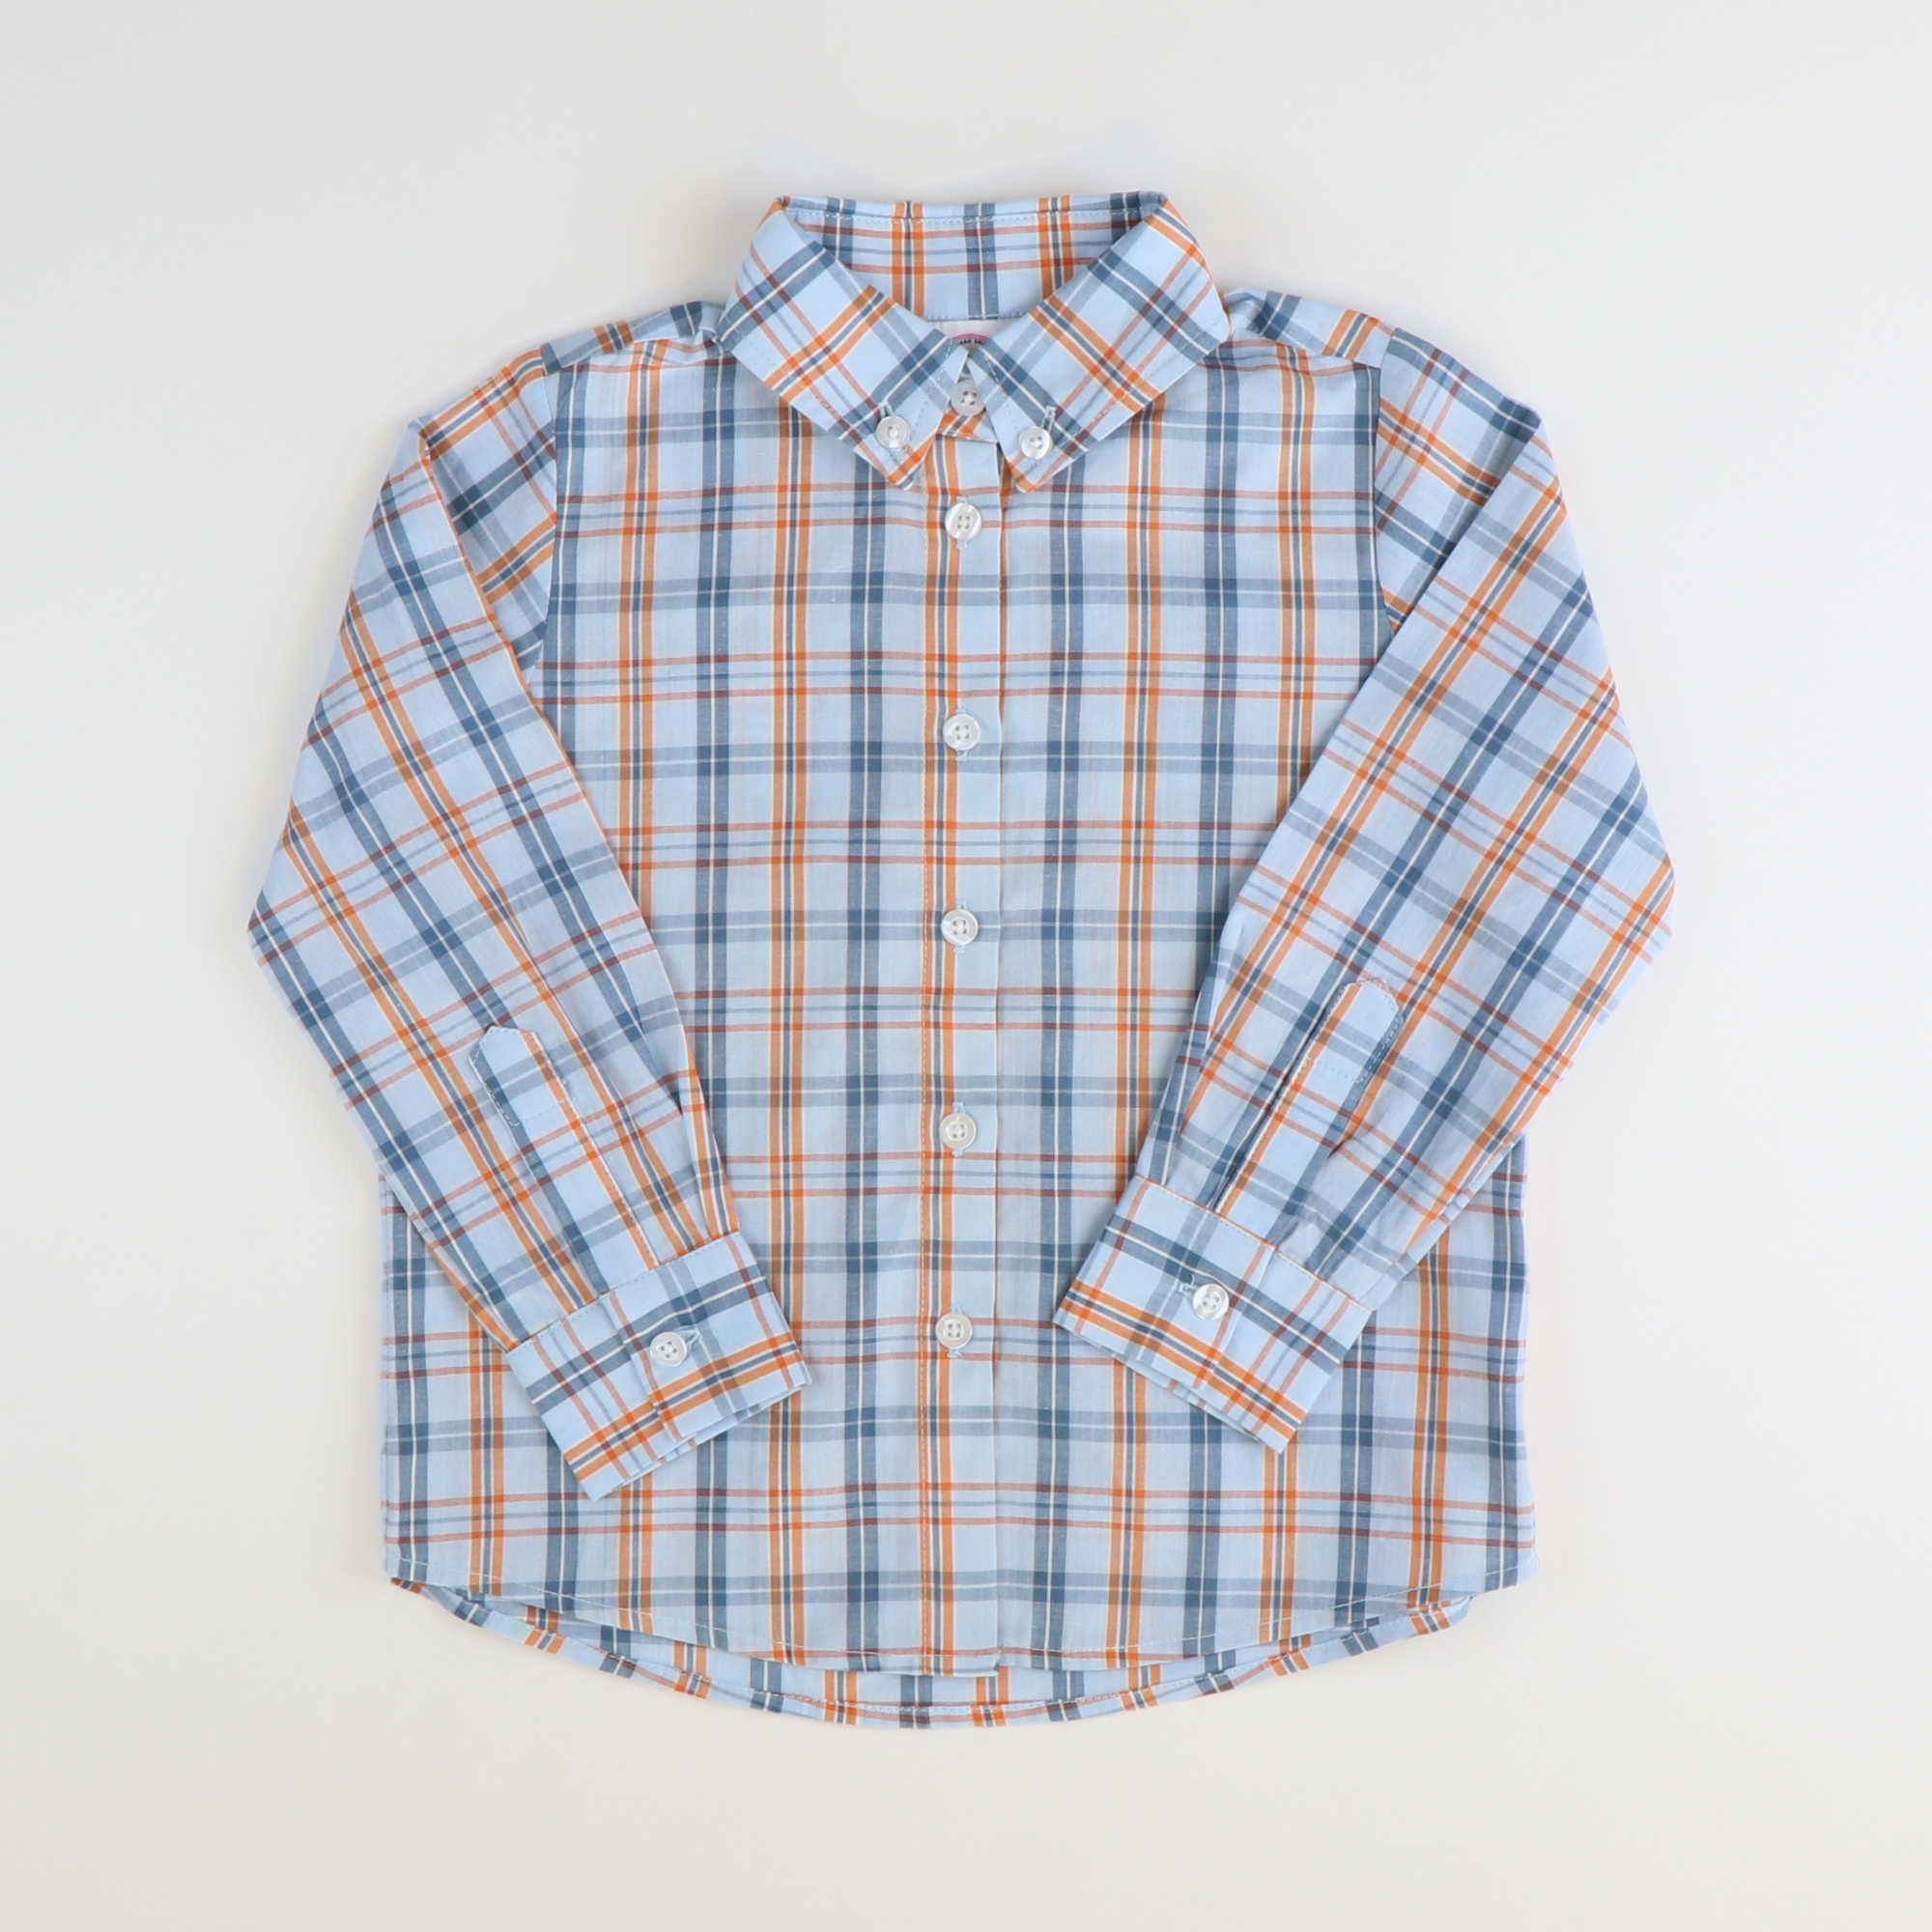 Boys L/S Button Down Shirt - Orange & Blue Plaid